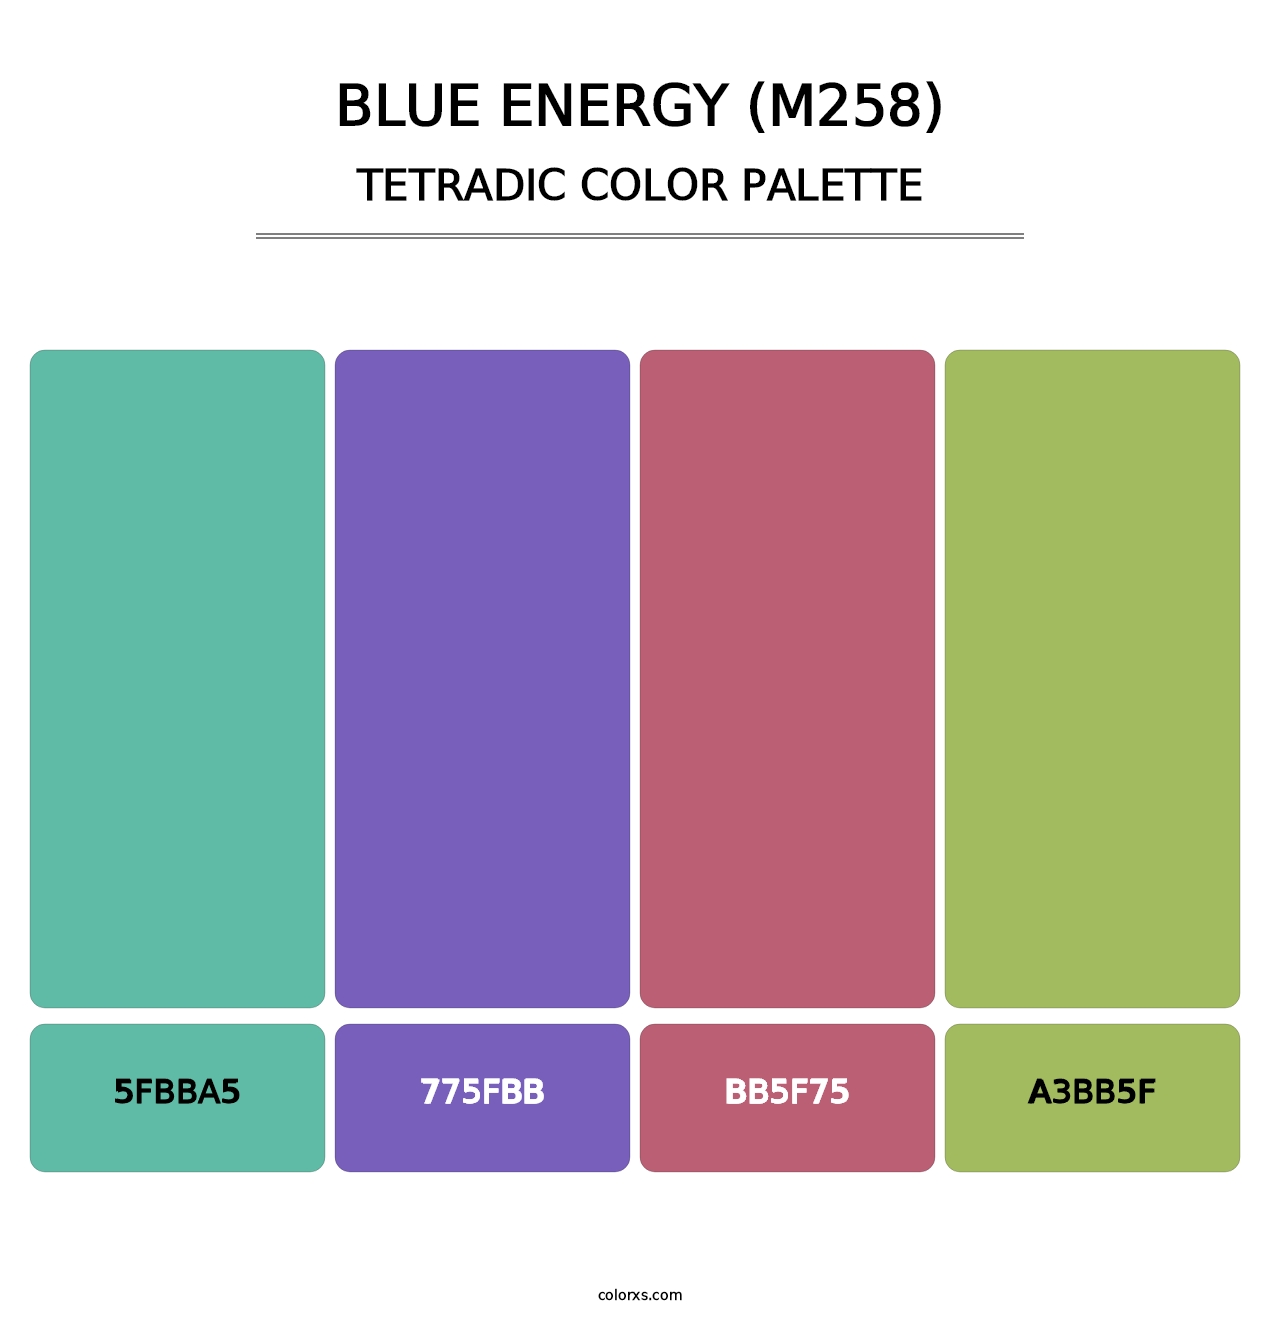 Blue Energy (M258) - Tetradic Color Palette